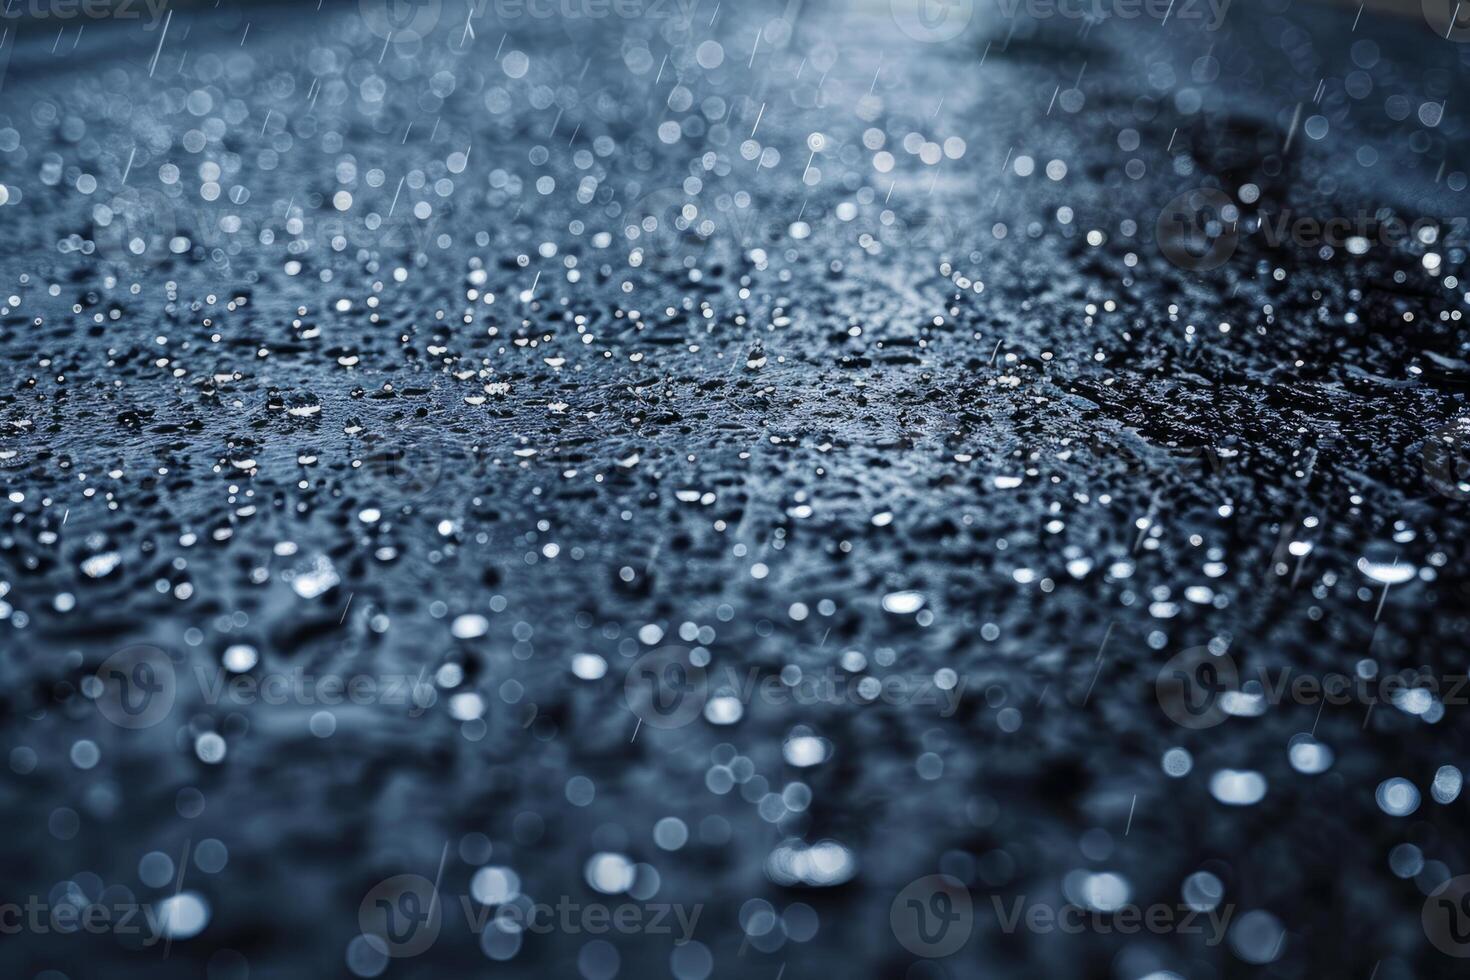 pluvieux temps, gouttes de pluie chute sur le asphalte photo